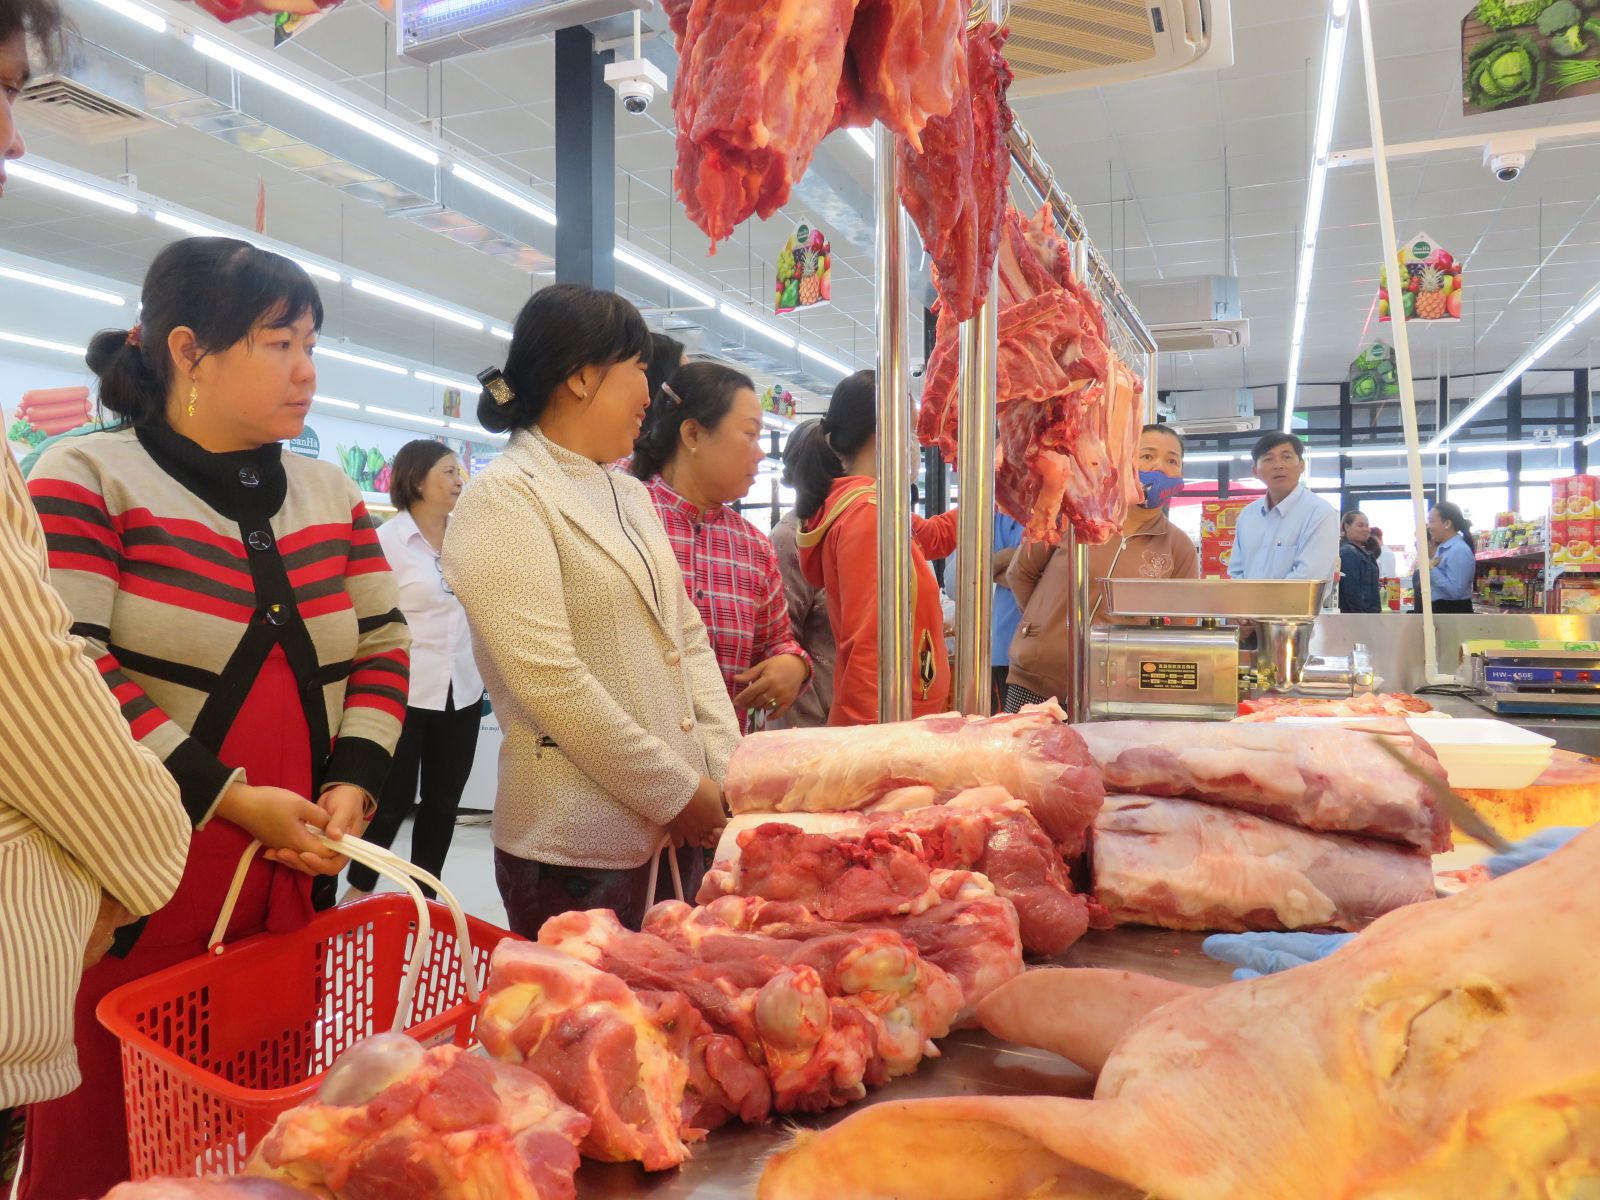 Giá bán  thịt heo ra  thị trường hiện nay khá cao, khó khăn cho người tiêu dùng